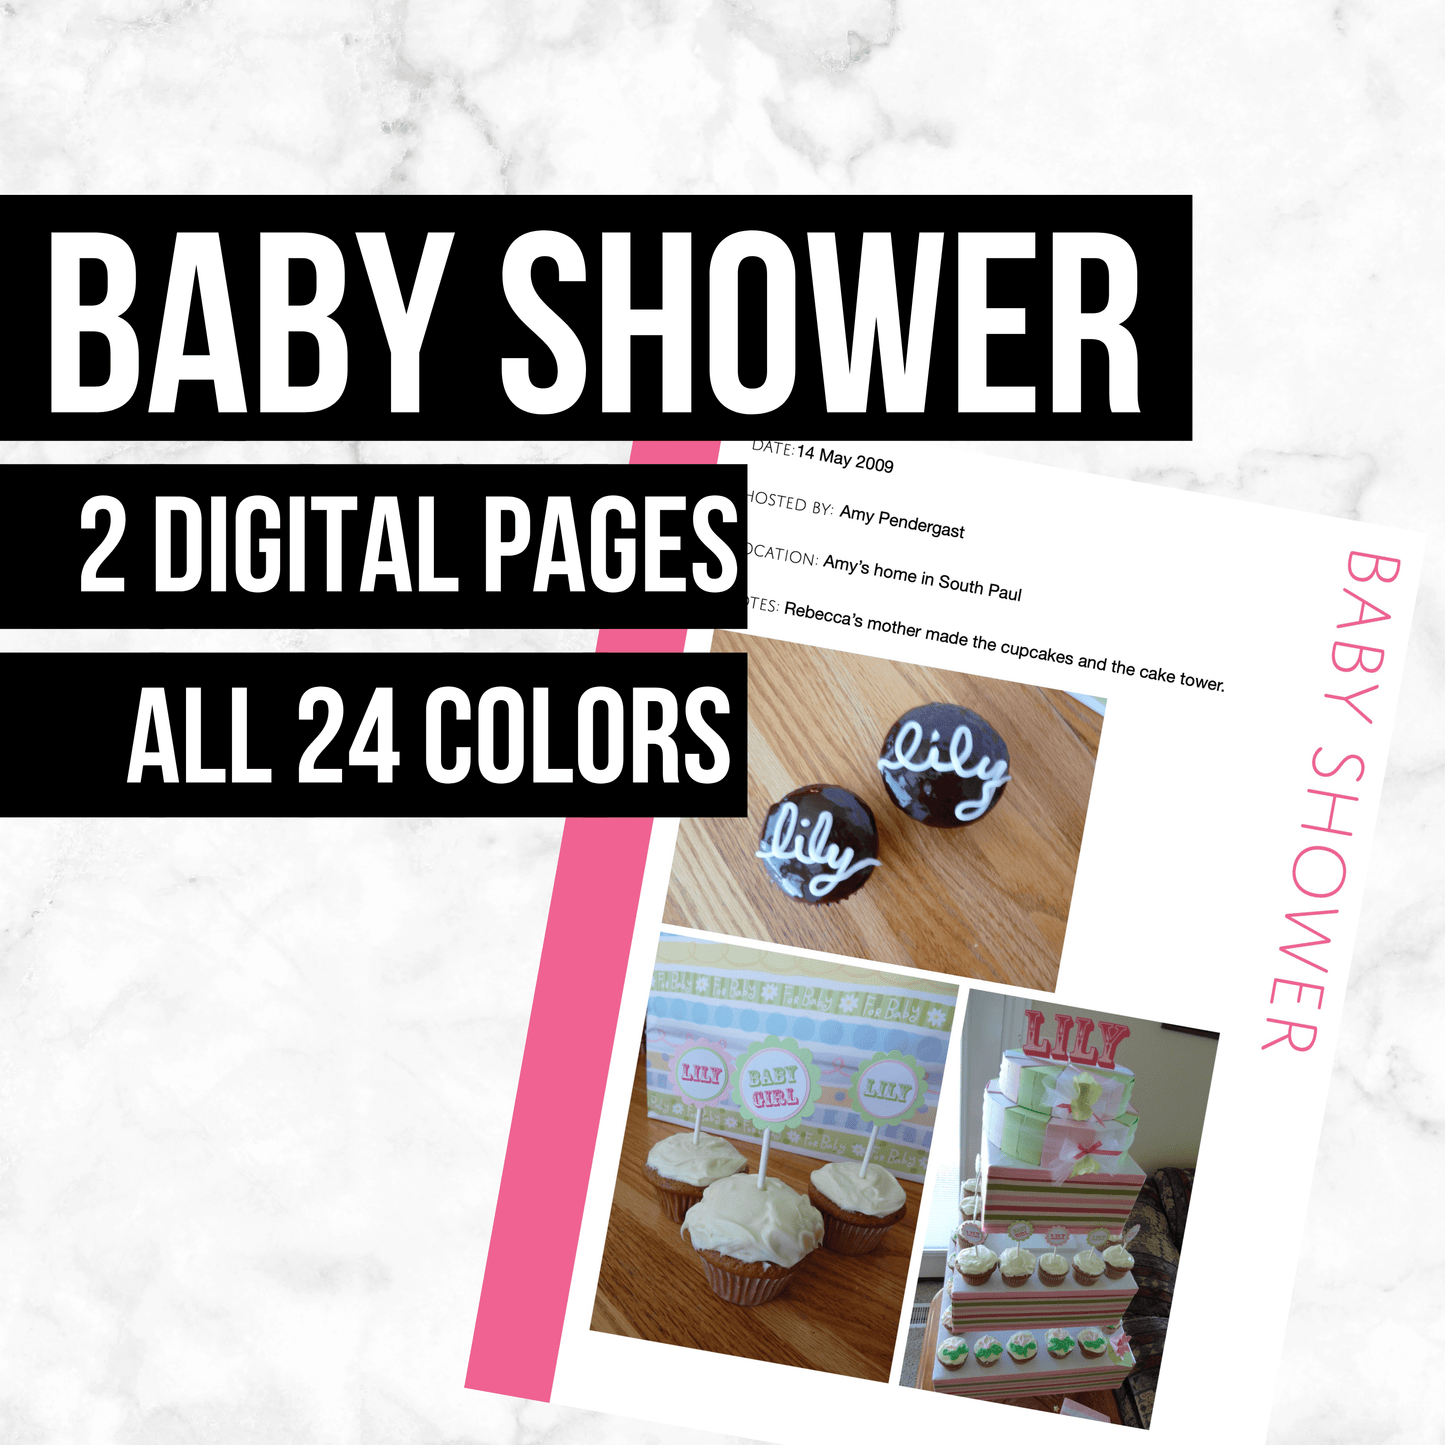 Baby Shower: Printable Genealogy Form (Digital Download)